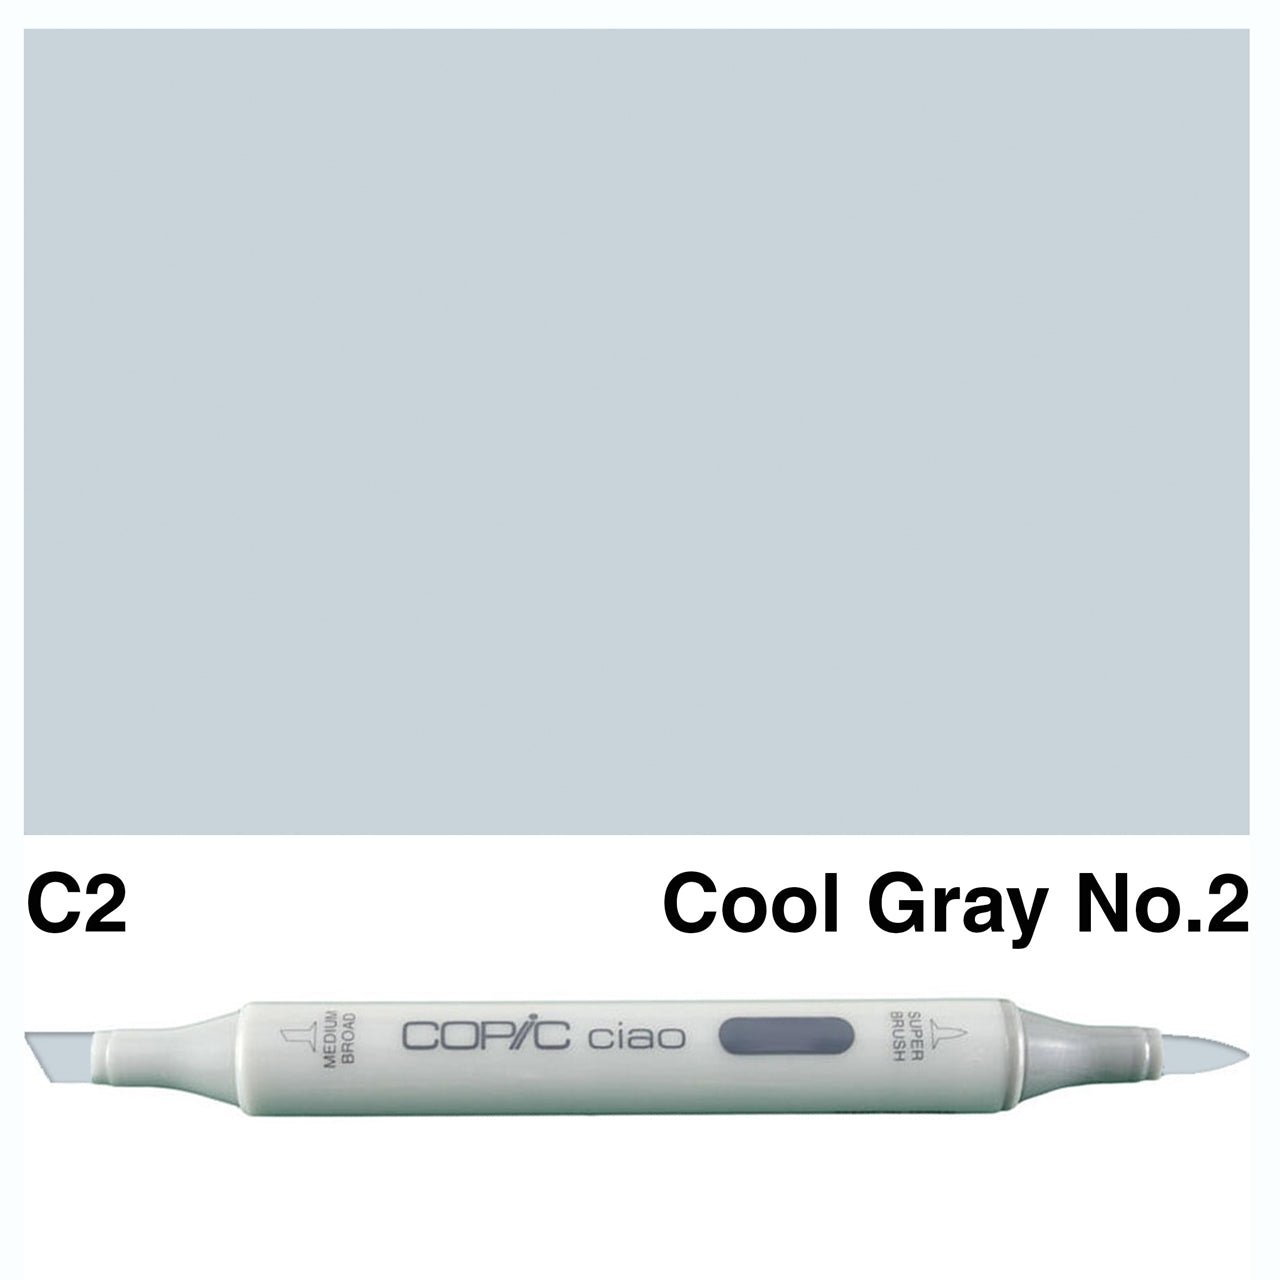 Copic Ciao C2 Cool Gray No.2 - theartshop.com.au